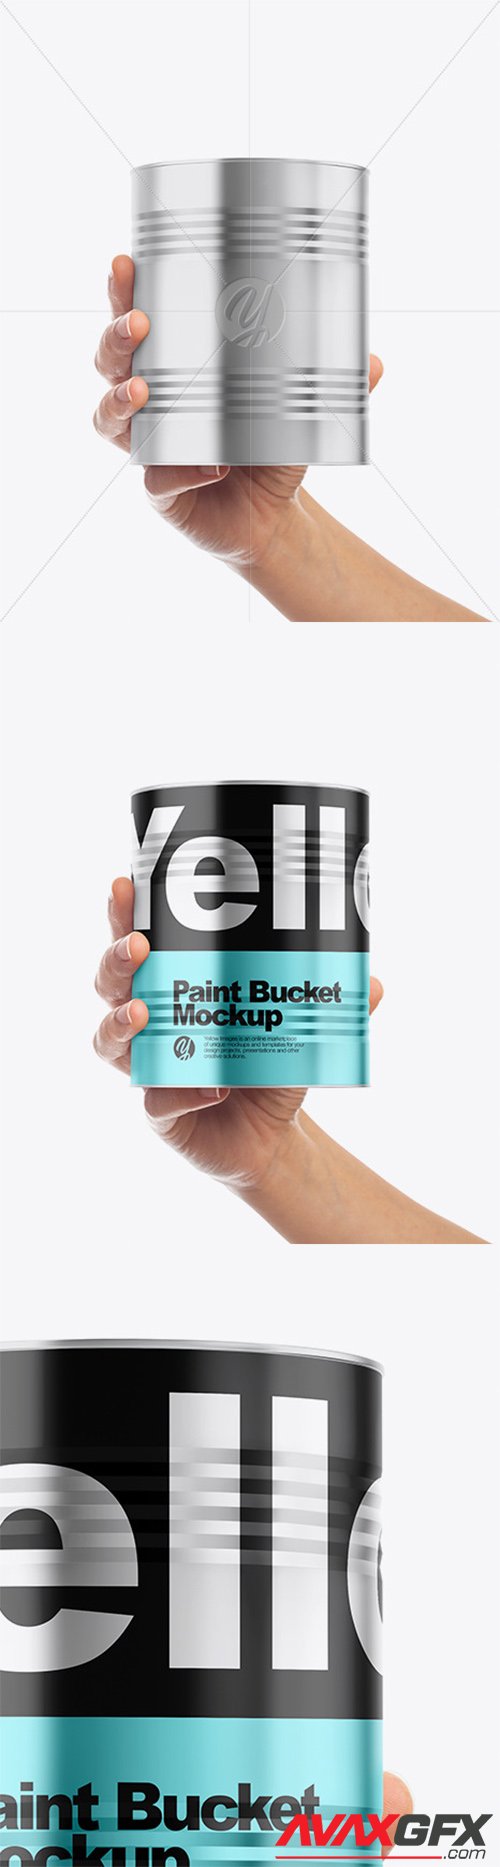 Metallic Paint Bucket in Hand Mockup - Front View 60761